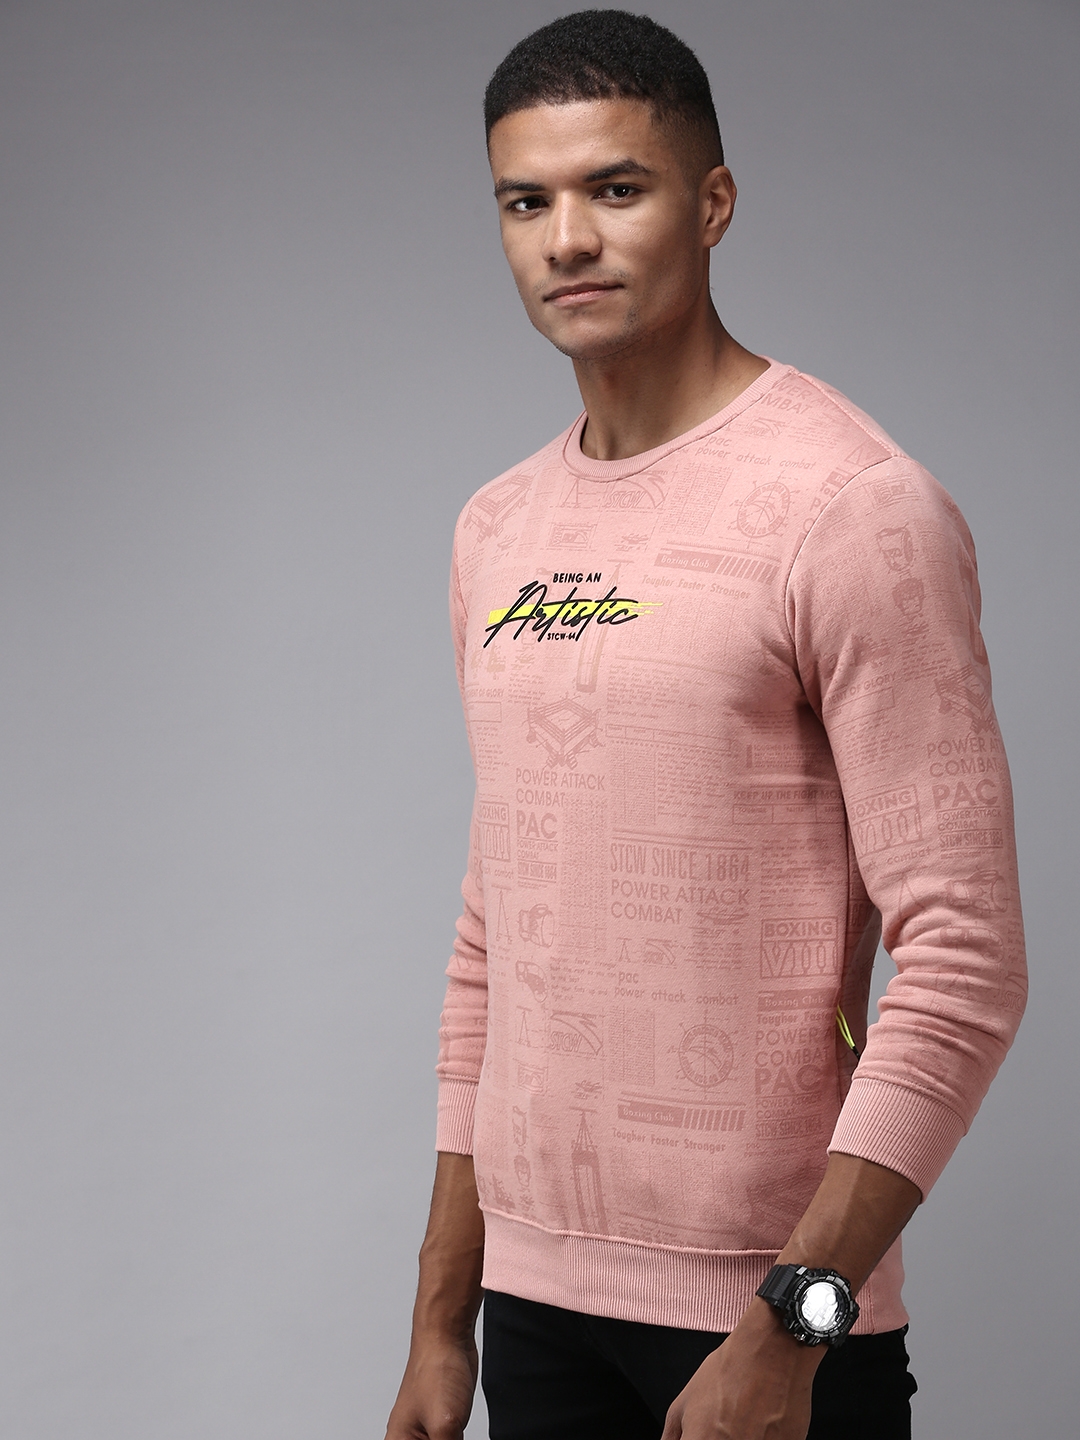 Men's Pink Polyester Printed Sweatshirts